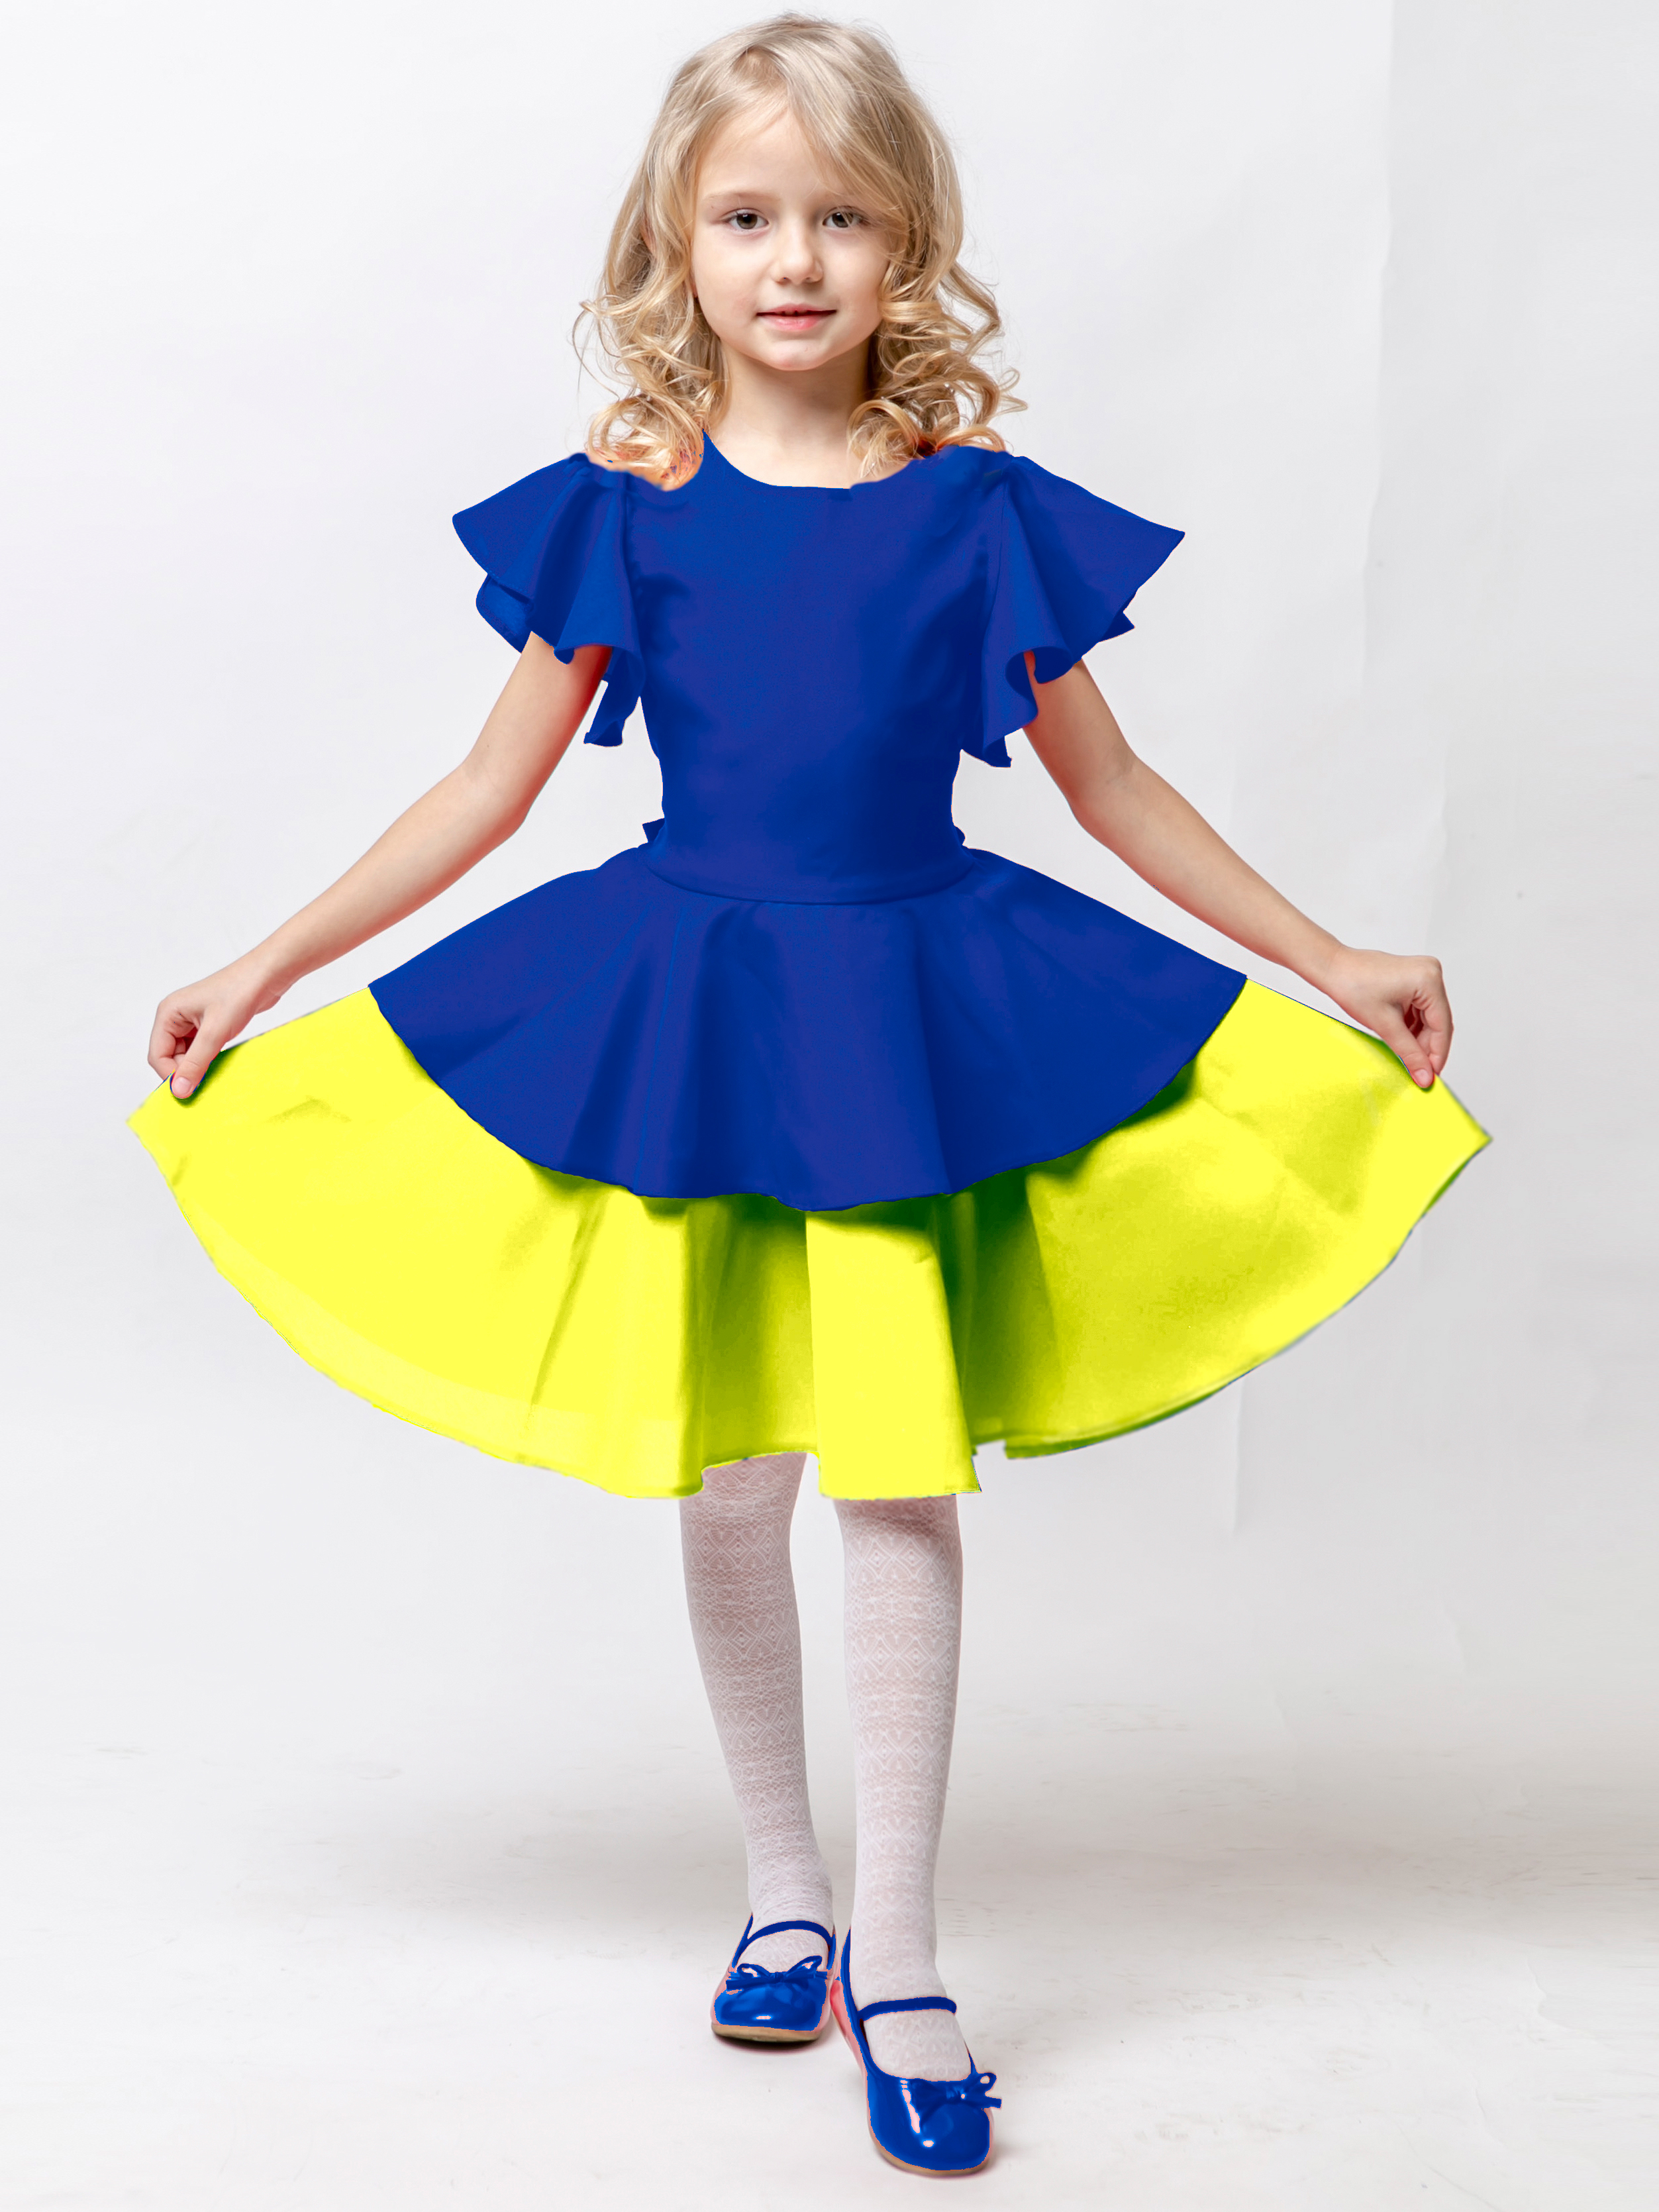 Детские нарядные платья и костюмы купить во Владивостоке с доставкой от Компании Лиола